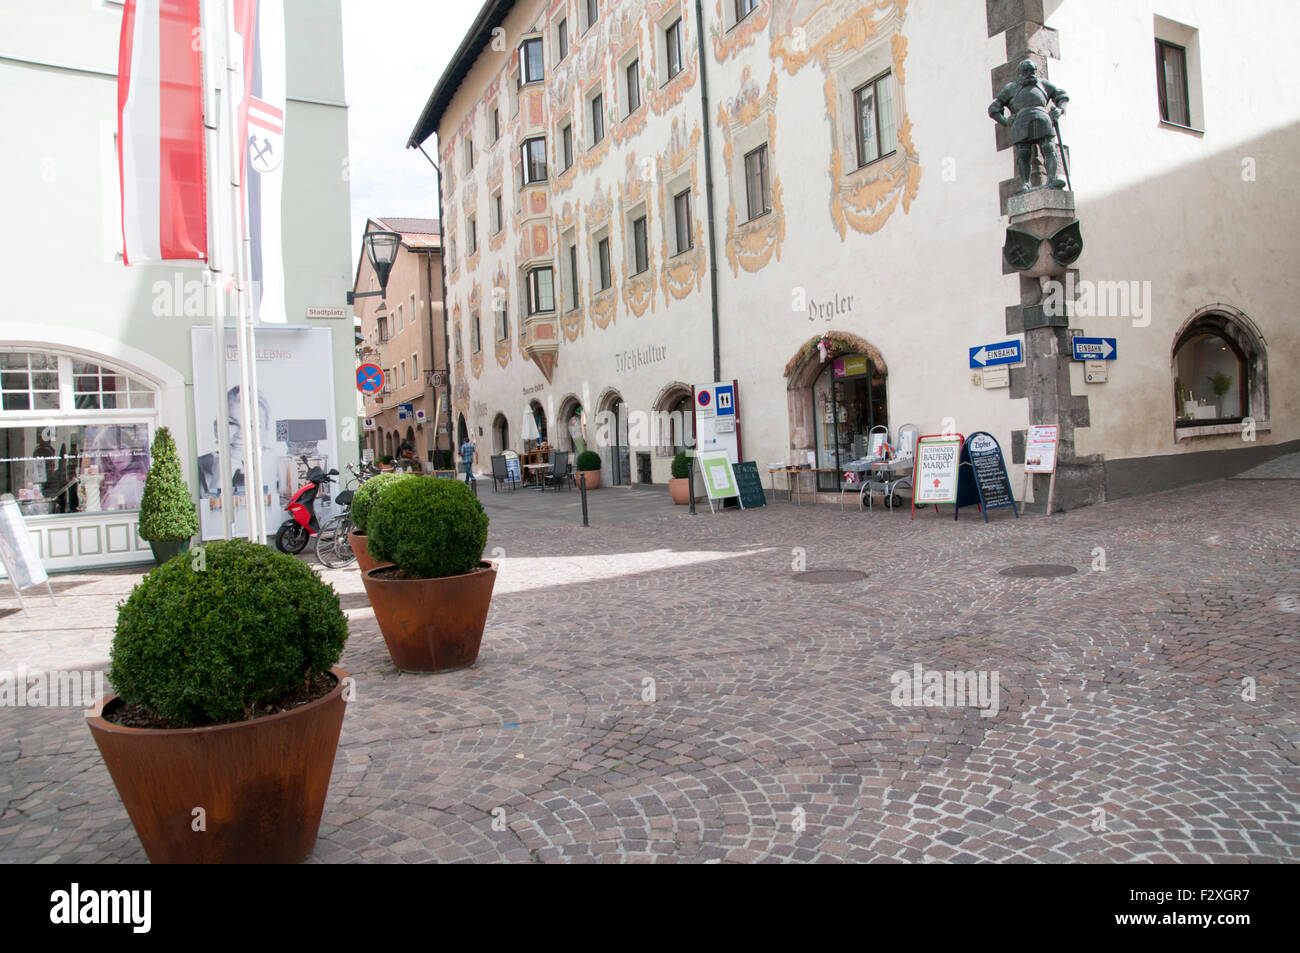 Austria, Tyrol, Schwaz. Town hall in Franz Josef pedestrian Street in the old town Stock Photo